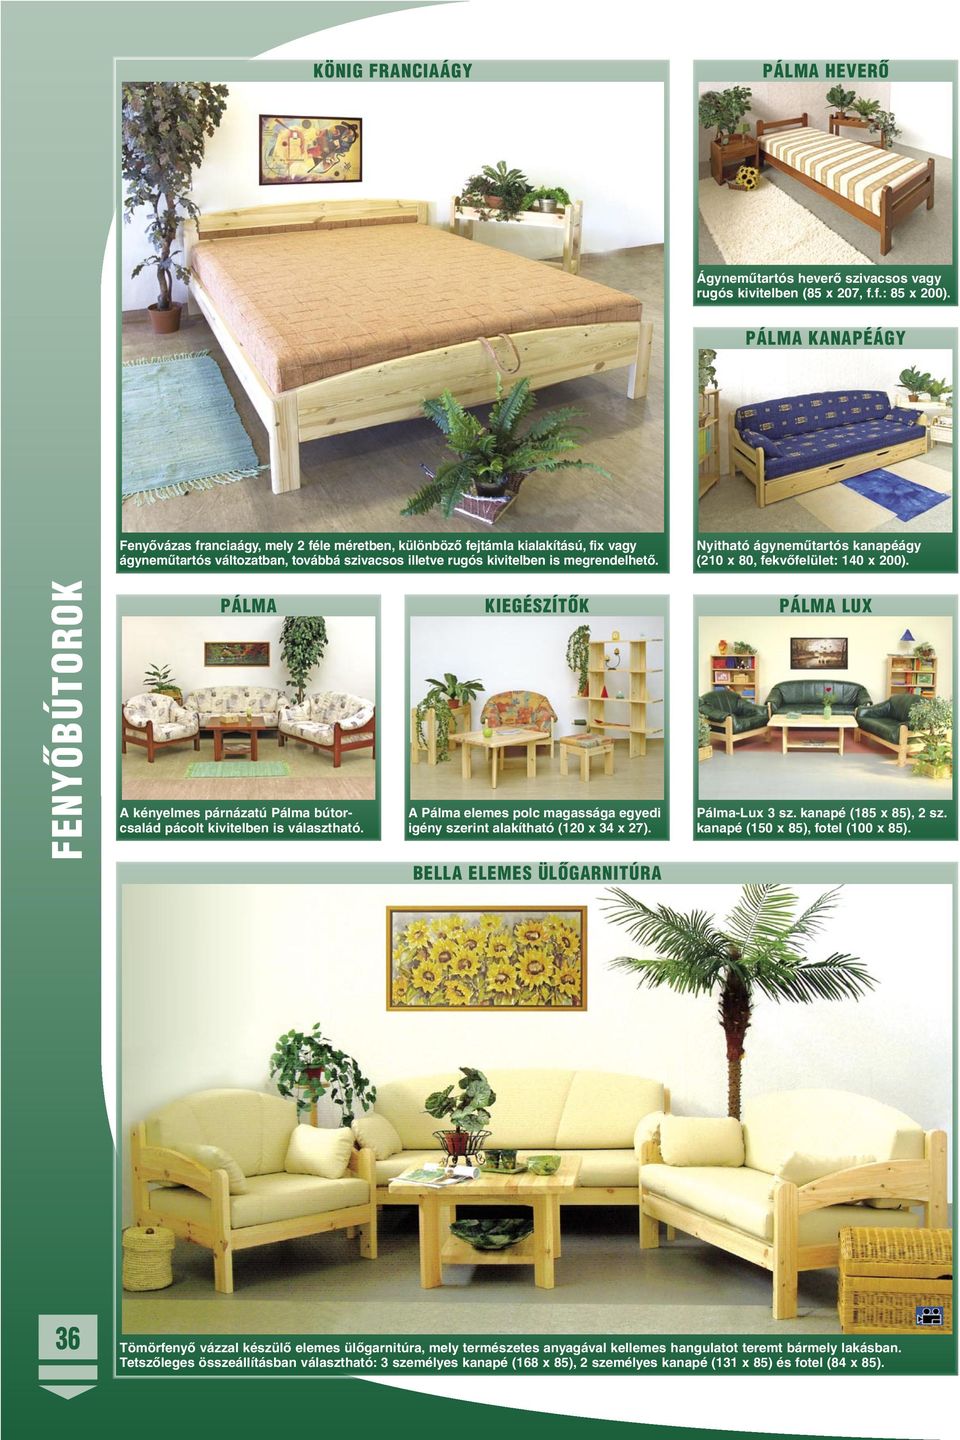 Nyitható ágynemûtartós kanapéágy (210 x 80, fekvõfelület: 140 x 200). FENYÕBÚTOROK PÁLMA A kényelmes párnázatú Pálma bútorcsalád pácolt kivitelben is választható.